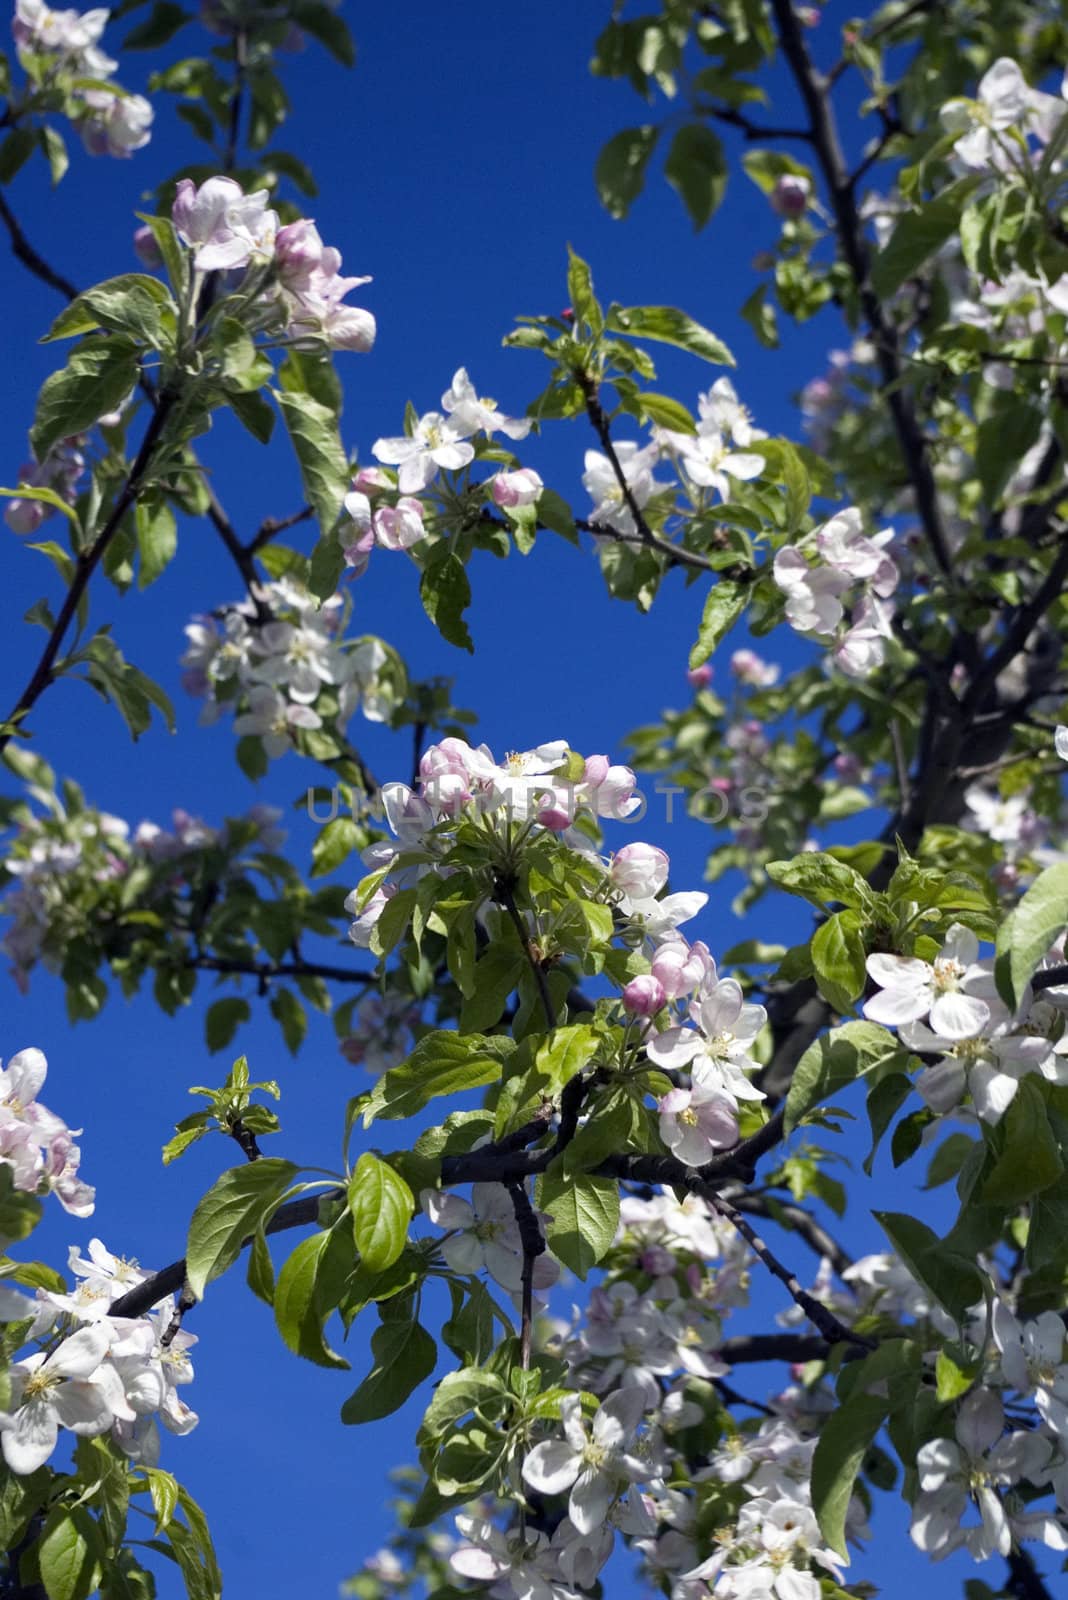 Blooming Apple Tree in Spring by jol66